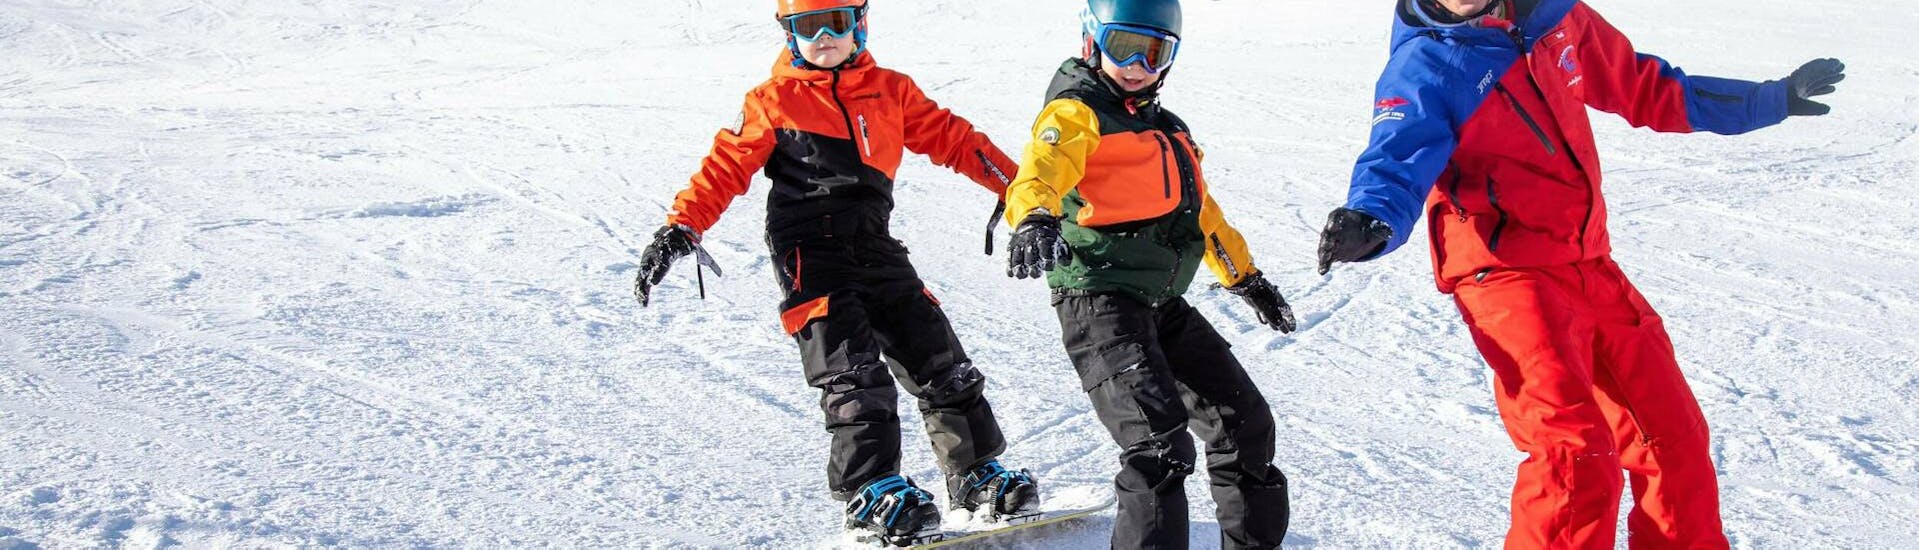 Privé skilessen voor kinderen in Galtür voor alle leeftijden met Skischule Silvretta Galtür.